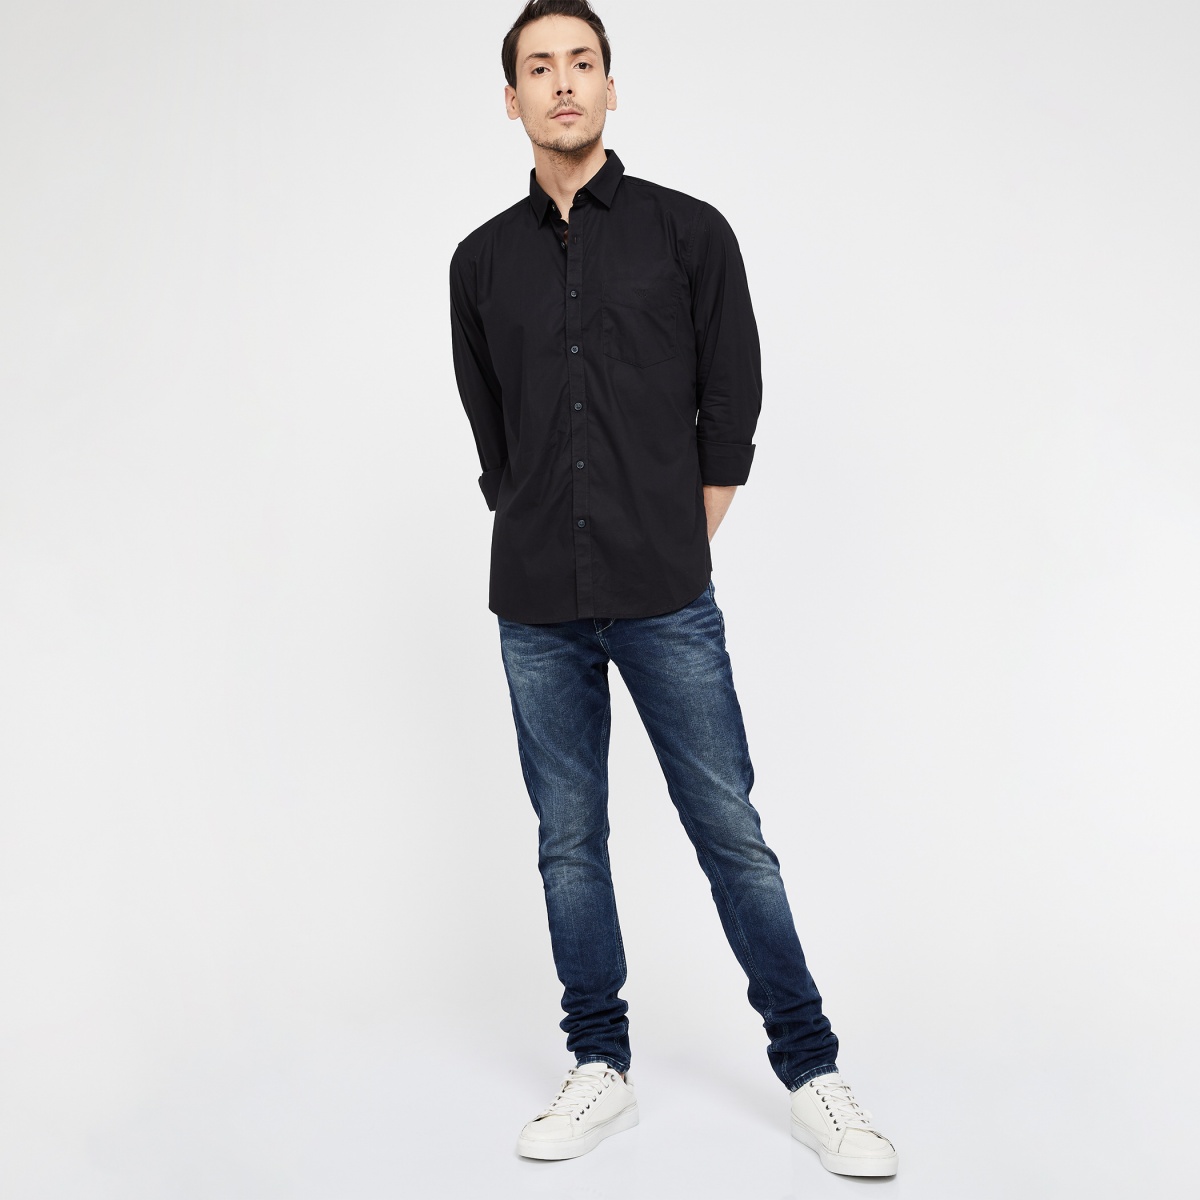 VAN HEUSEN Slim Fit Solid Long-Sleeve Shirt